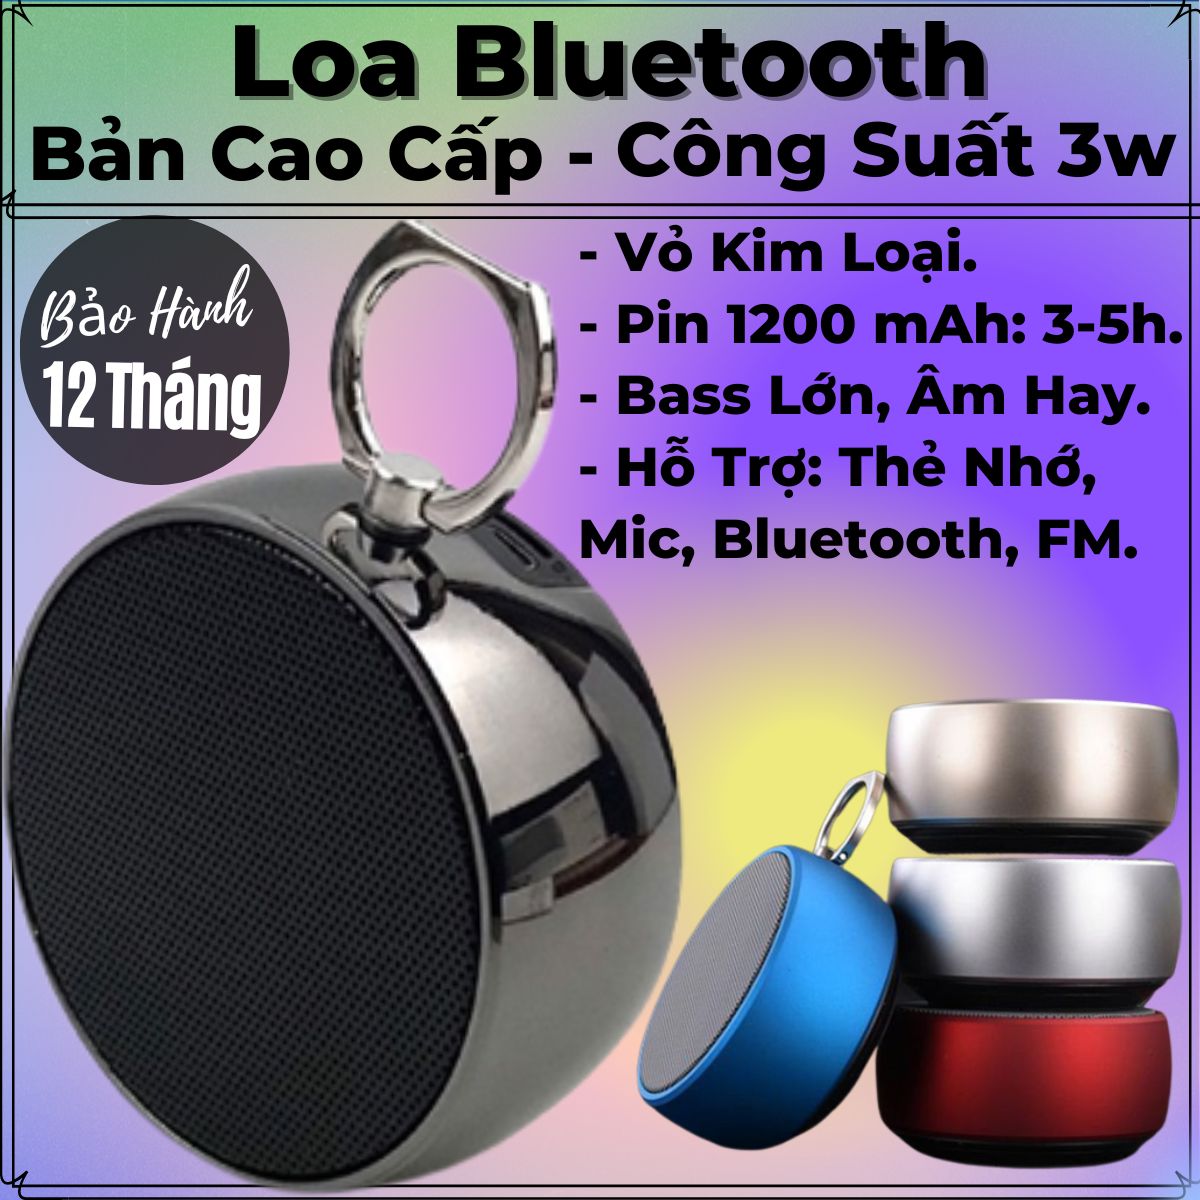 Loa Bluetooth Cao Cấp, Bass Cực Mạnh, Âm Thanh Vòm 360 Độ - Dung Lương Pin Khủng 1200mAh - Chống Nước IPX6